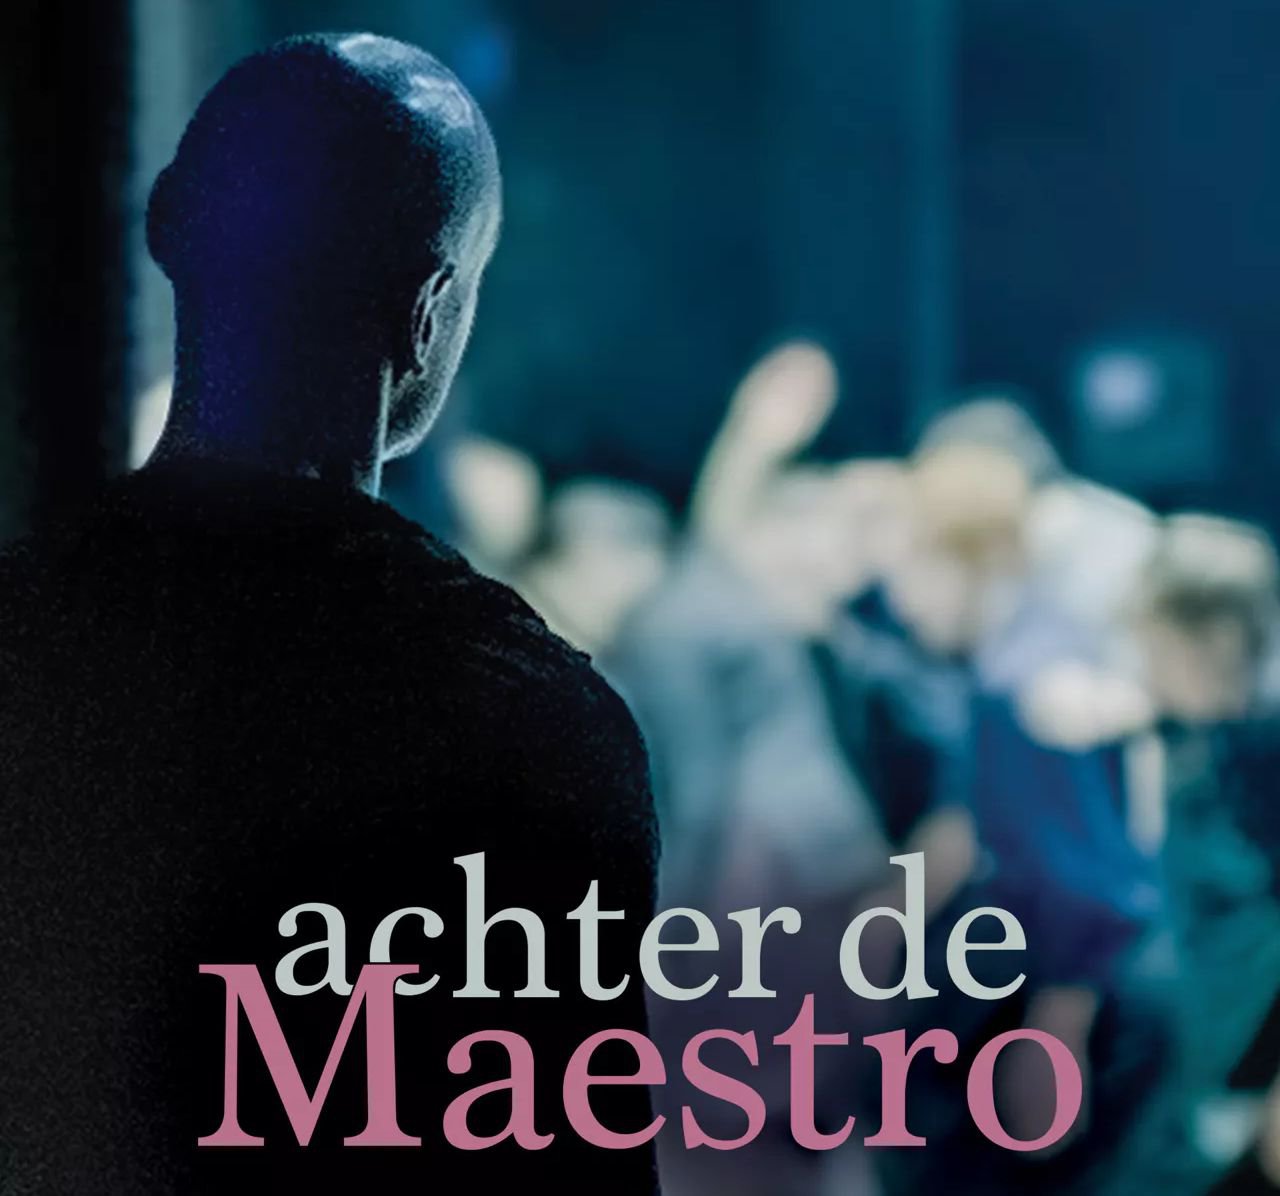 Wat het publiek niet ziet: een kijkje backstage “achter de Maestro”